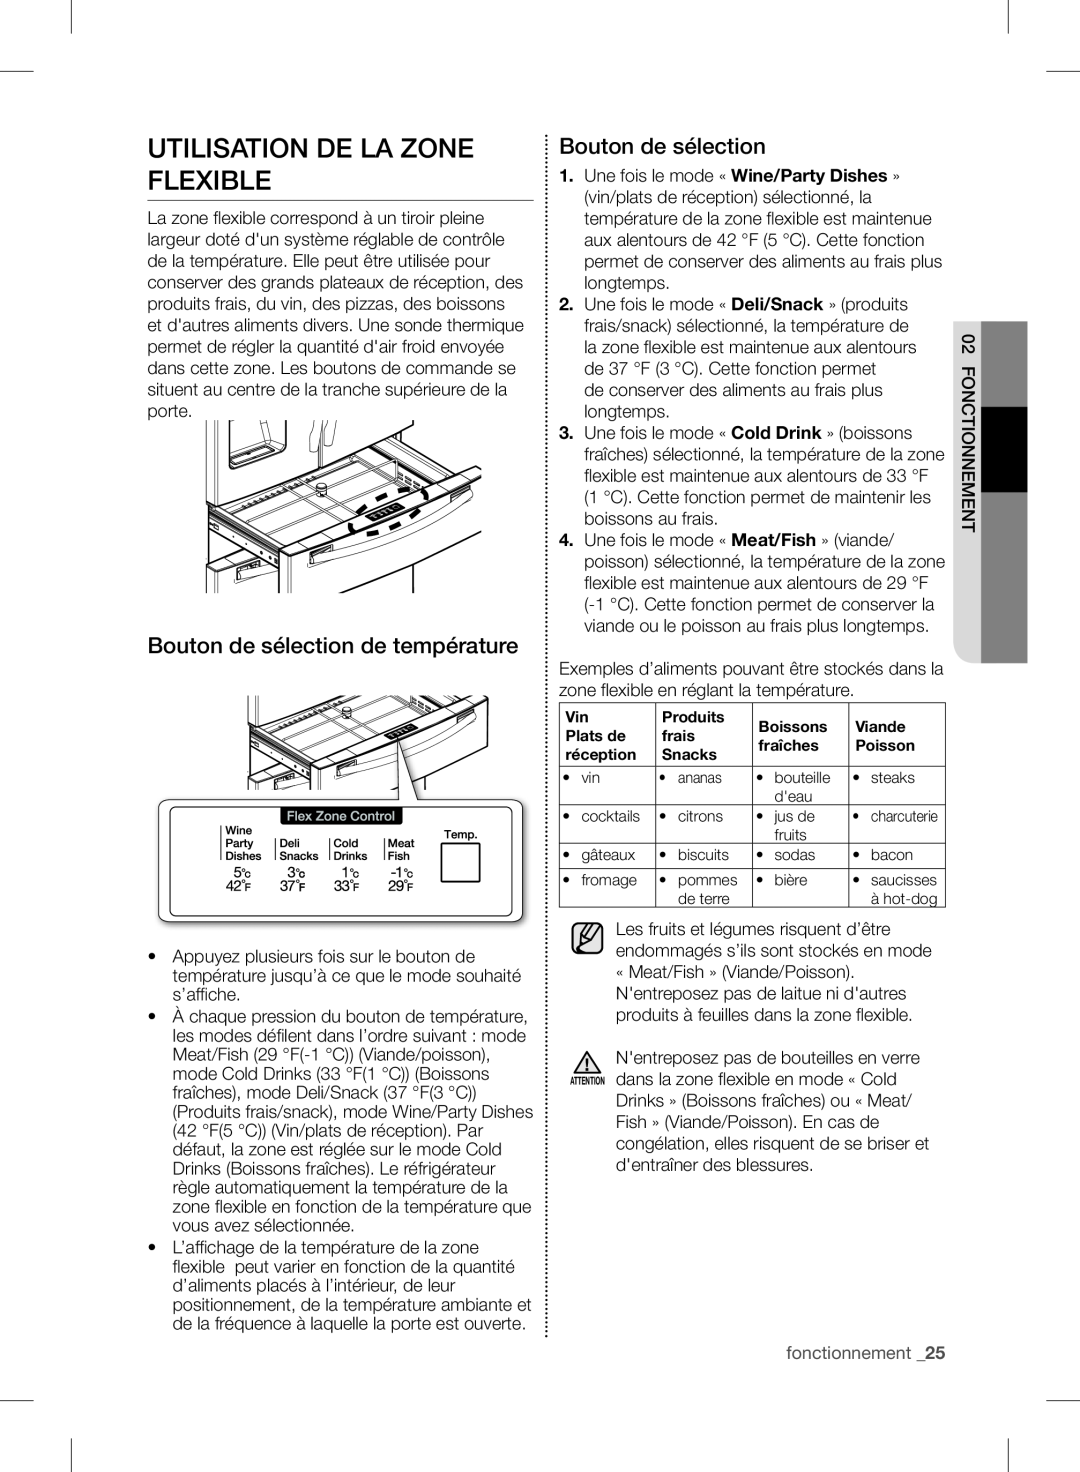 Samsung RF24FSEDBSR user manual Utilisation De La Zone Flexible, Bouton de sélection de température, fonctionnement _25 